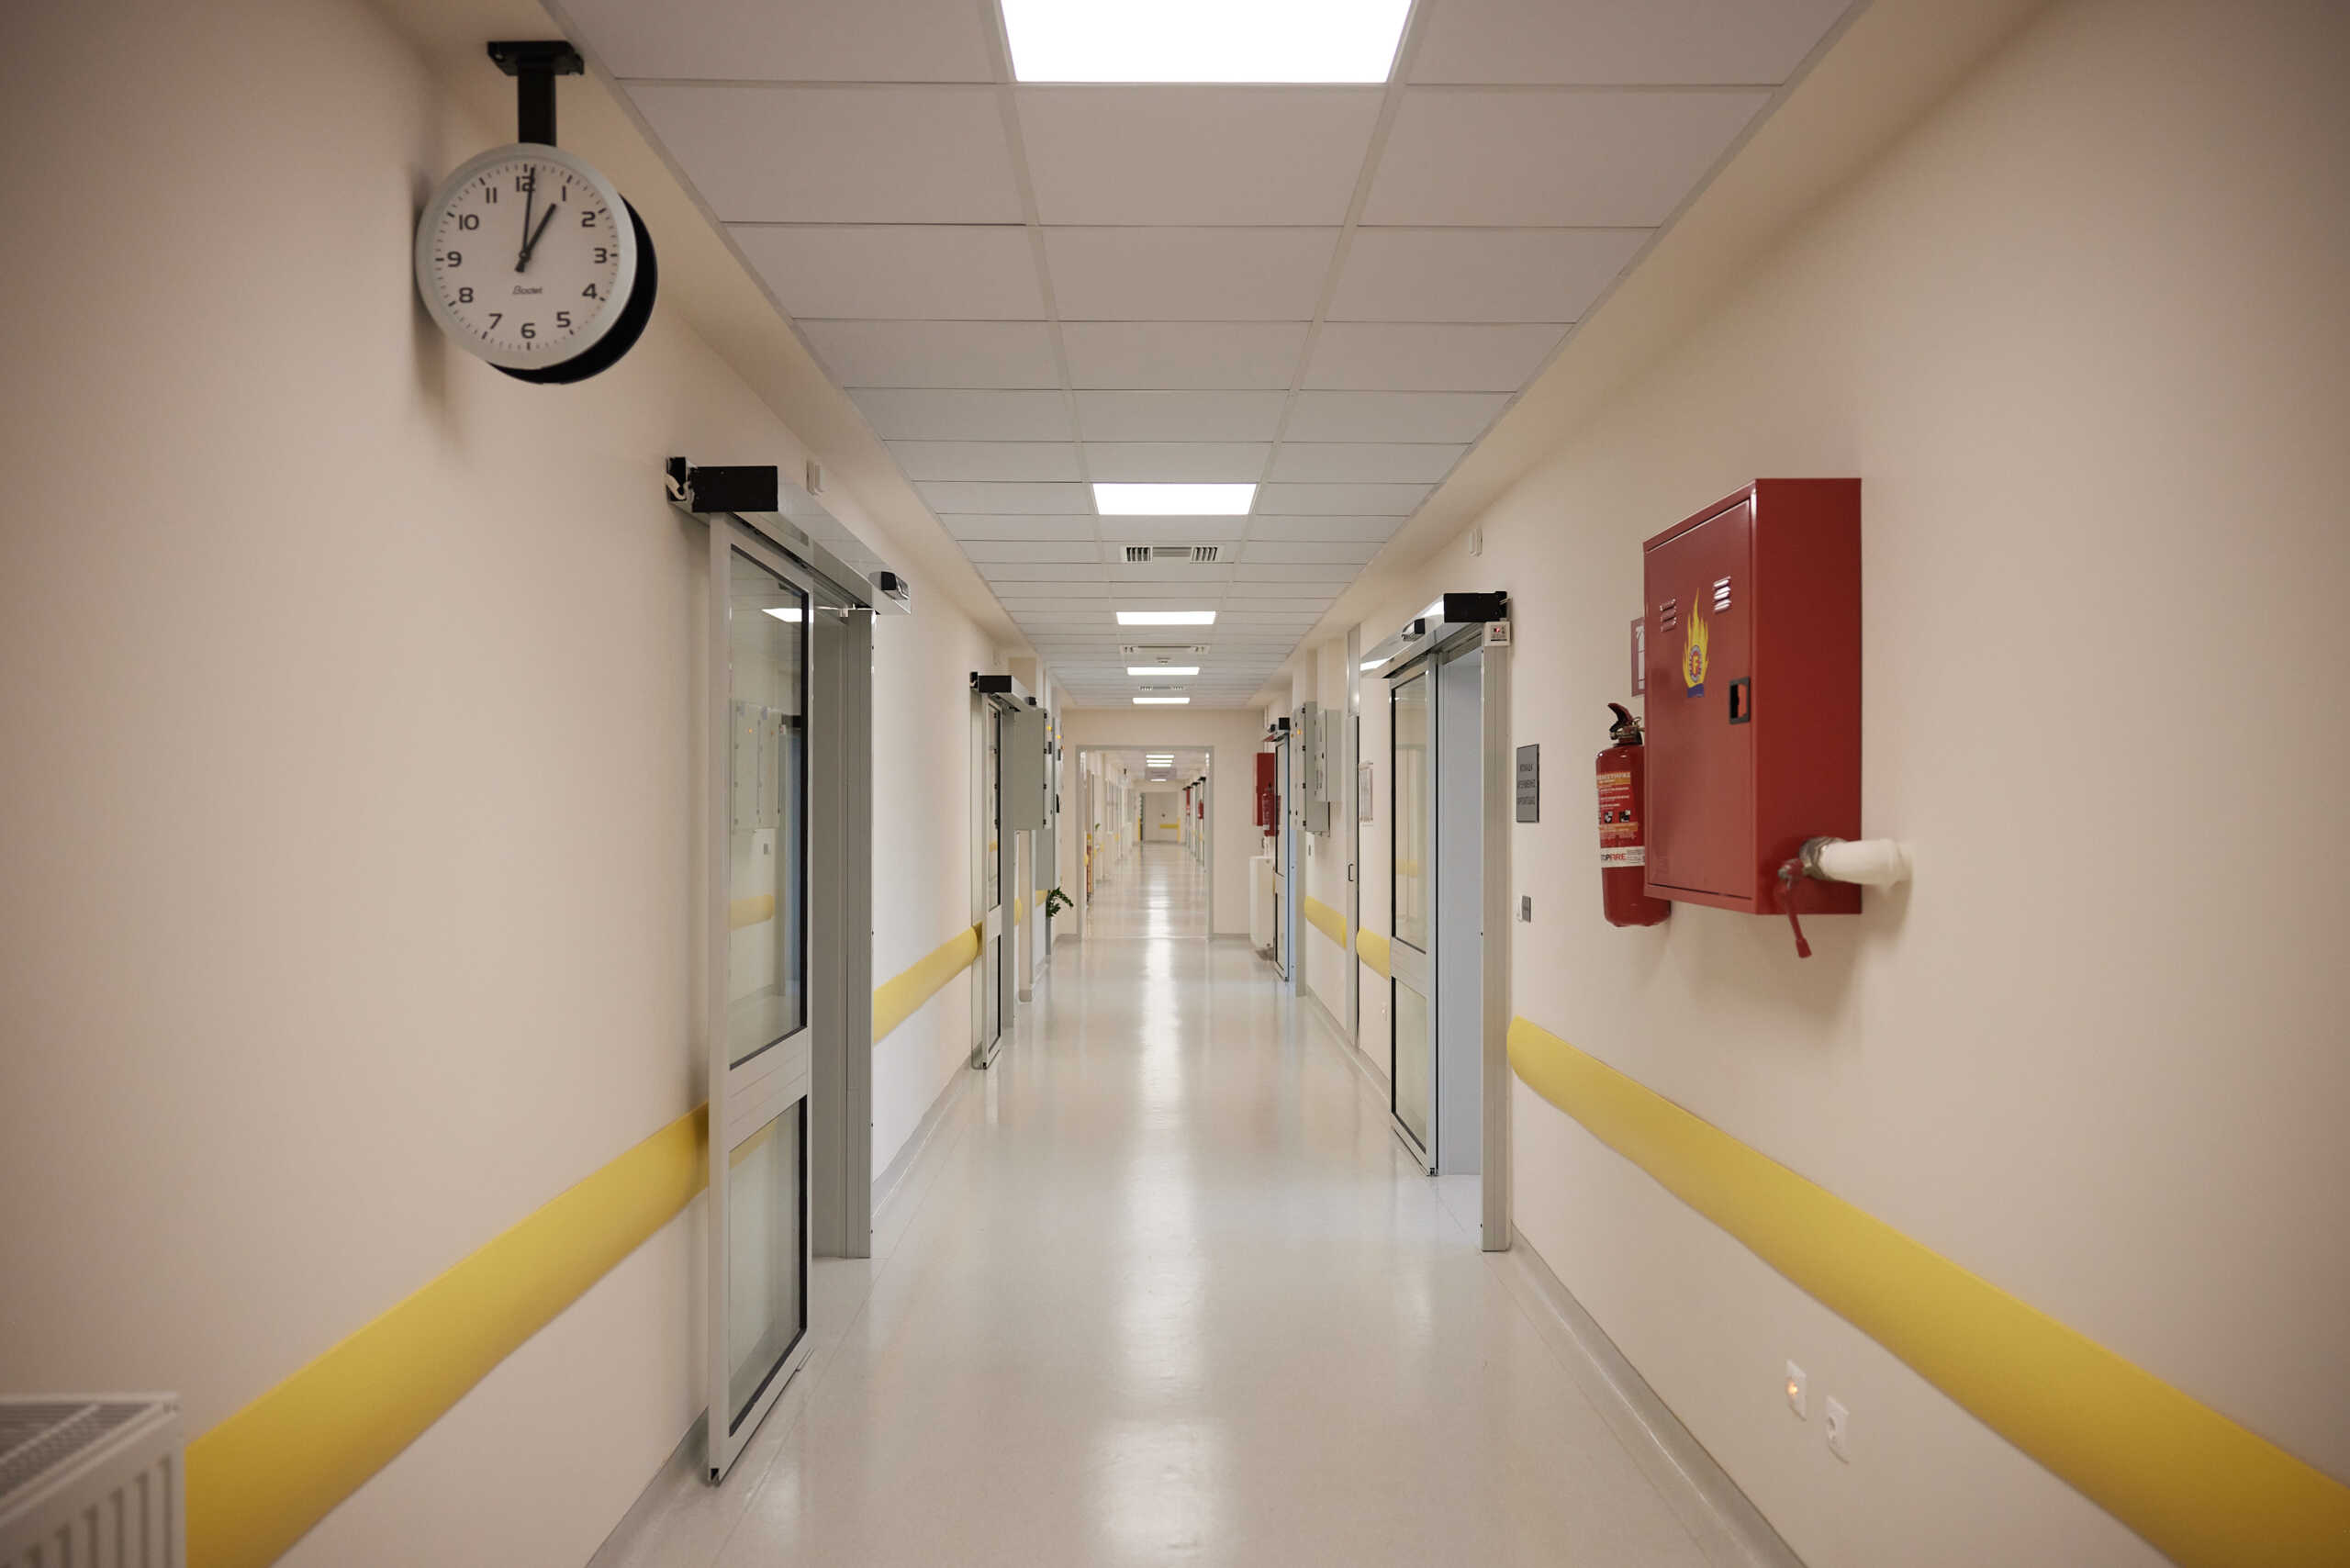 Κραυγή αγωνίας από το Νοσοκομείο Νίκαιας: «Επικίνδυνες συνθήκες στην εφημερία για γιατρούς και ασθενείς»